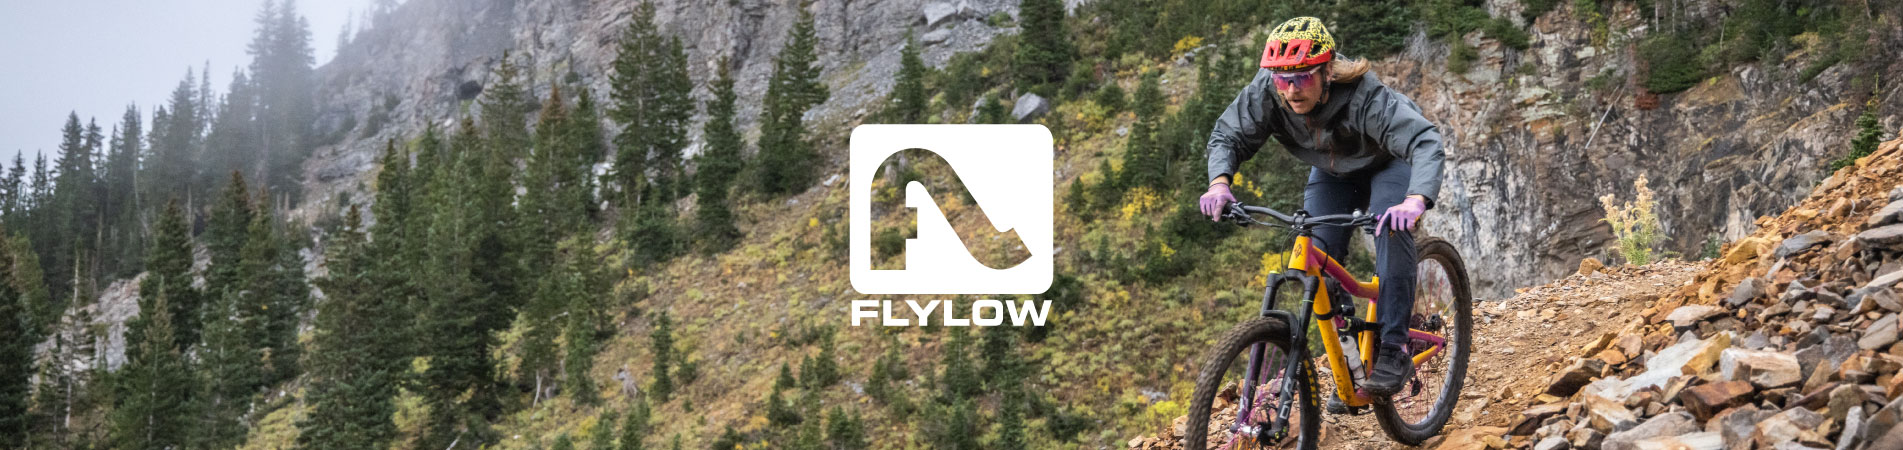 flylow-summer-brand-banners.jpg